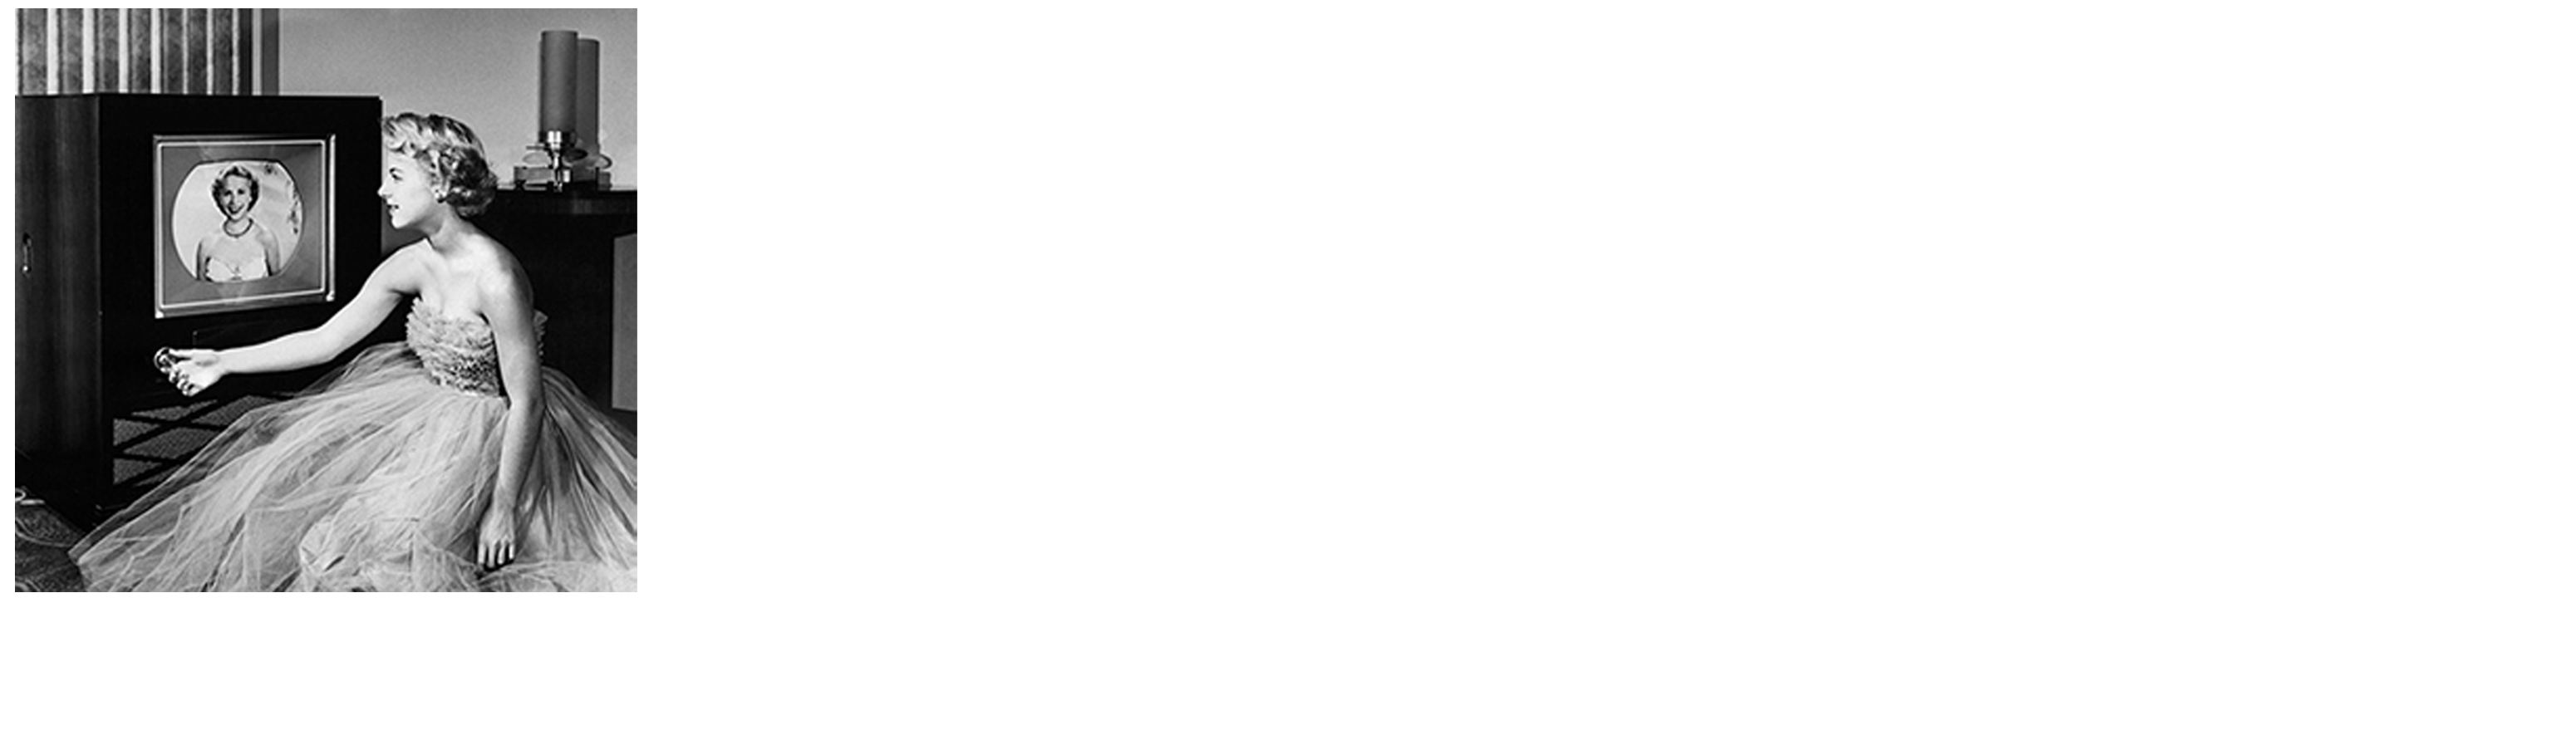 TV Museum DVDs